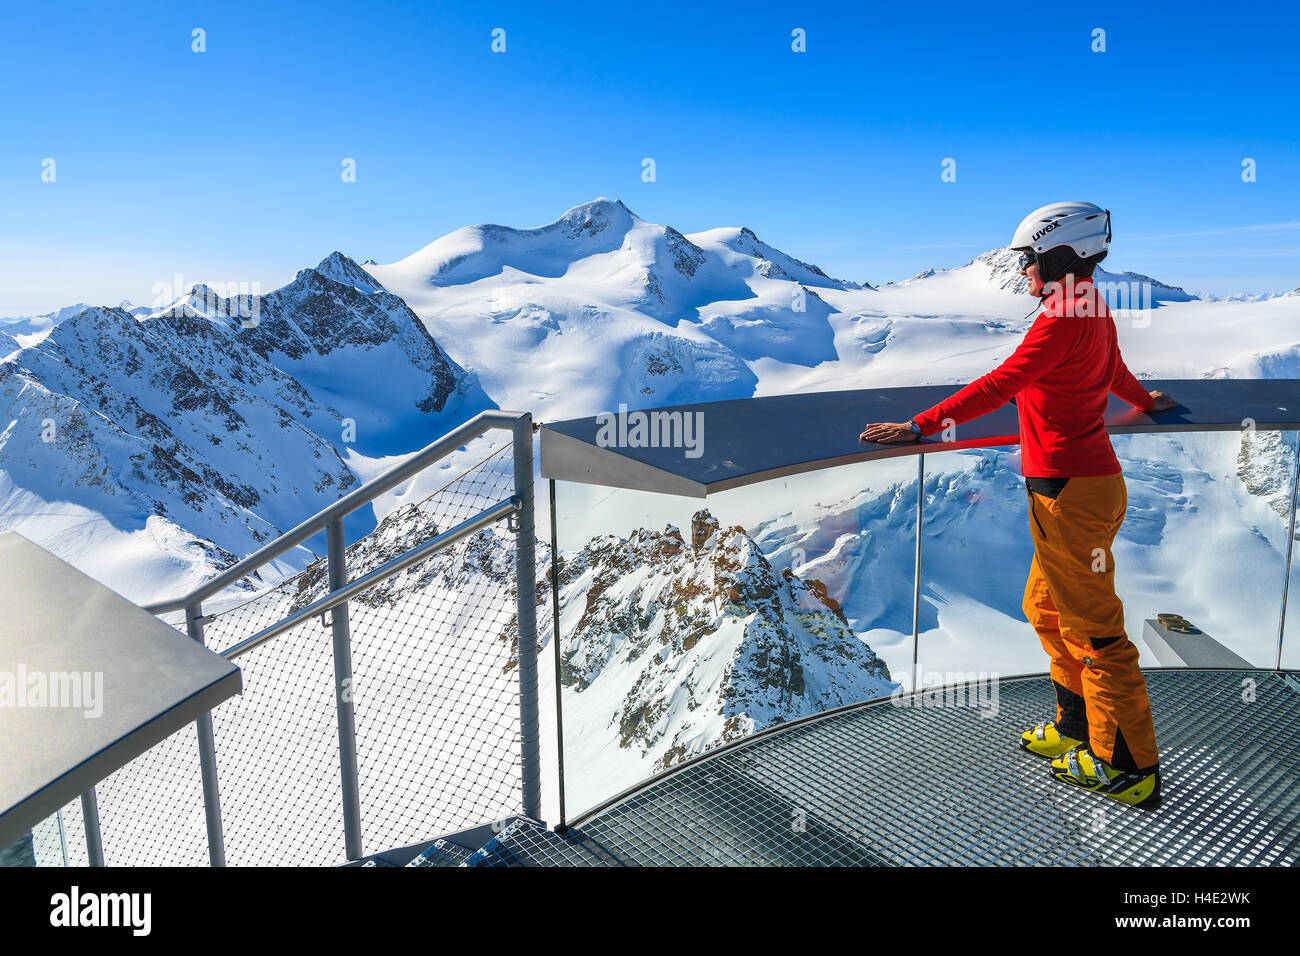 PITZTAL SKI RESORT, Österreich - 29. März 2014: Frau Skifahrer auf Plattform betrachten Wildspitze Berg stehend, zweite höchste Berg in Österreich. März ist sonnigste Monat für Skiurlaub. Stockfoto